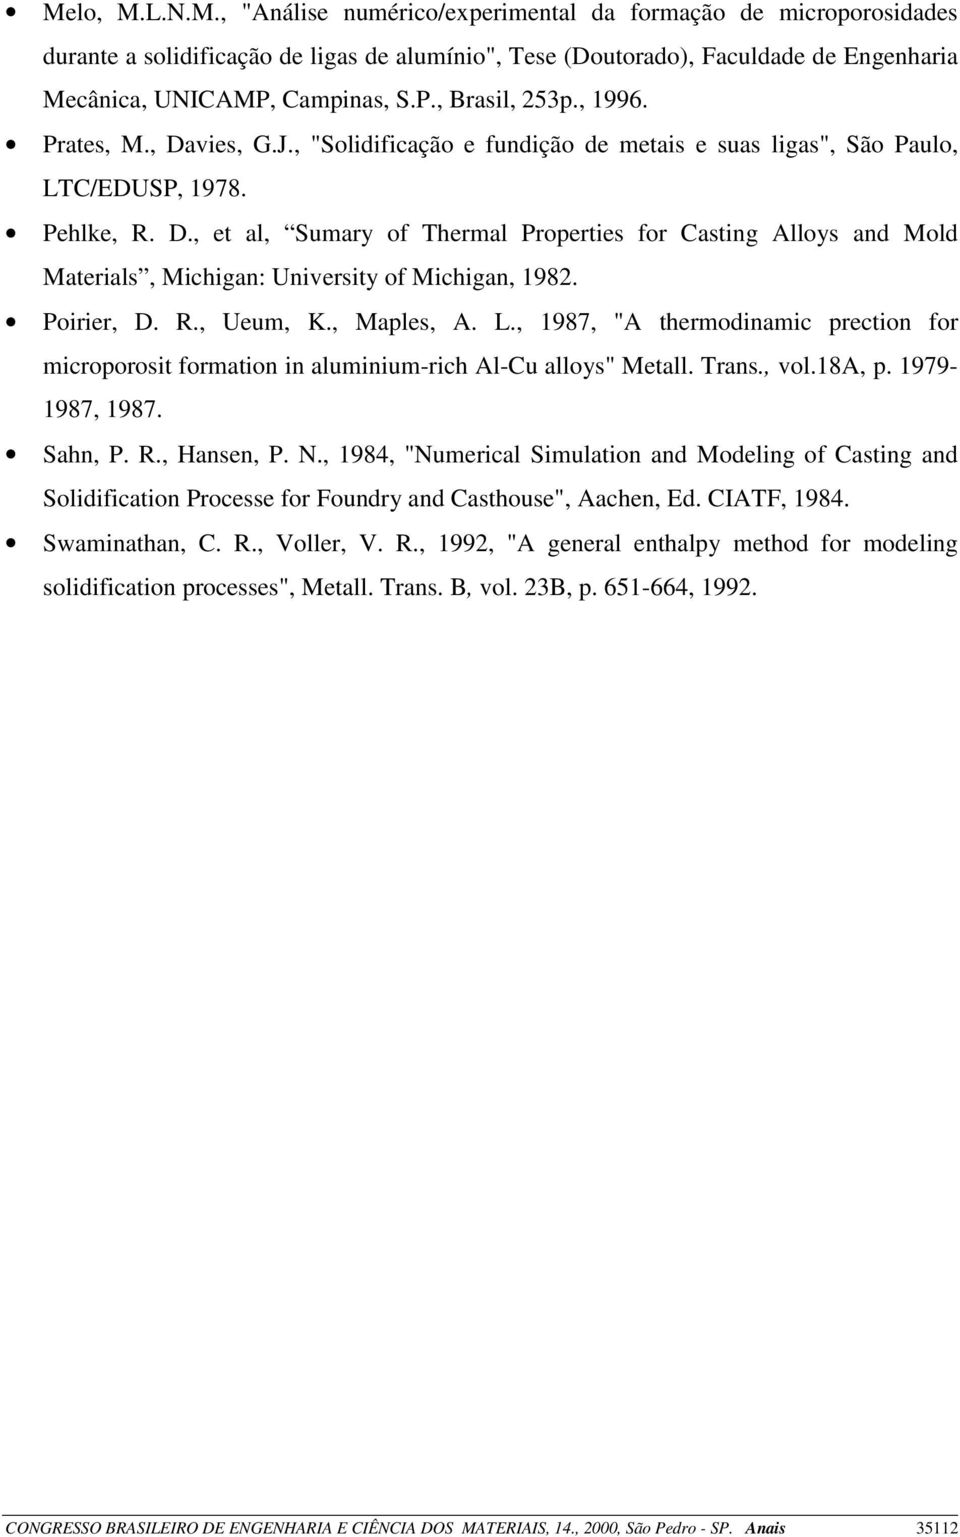 Poirier, D. R., Ueum, K., Maples, A. L., 1987, "A thermodinamic prection for microporosit formation in aluminium-rich Al-Cu alloys" Metall. Trans., vol.18a, p. 1979-1987, 1987. Sahn, P. R., Hansen, P.